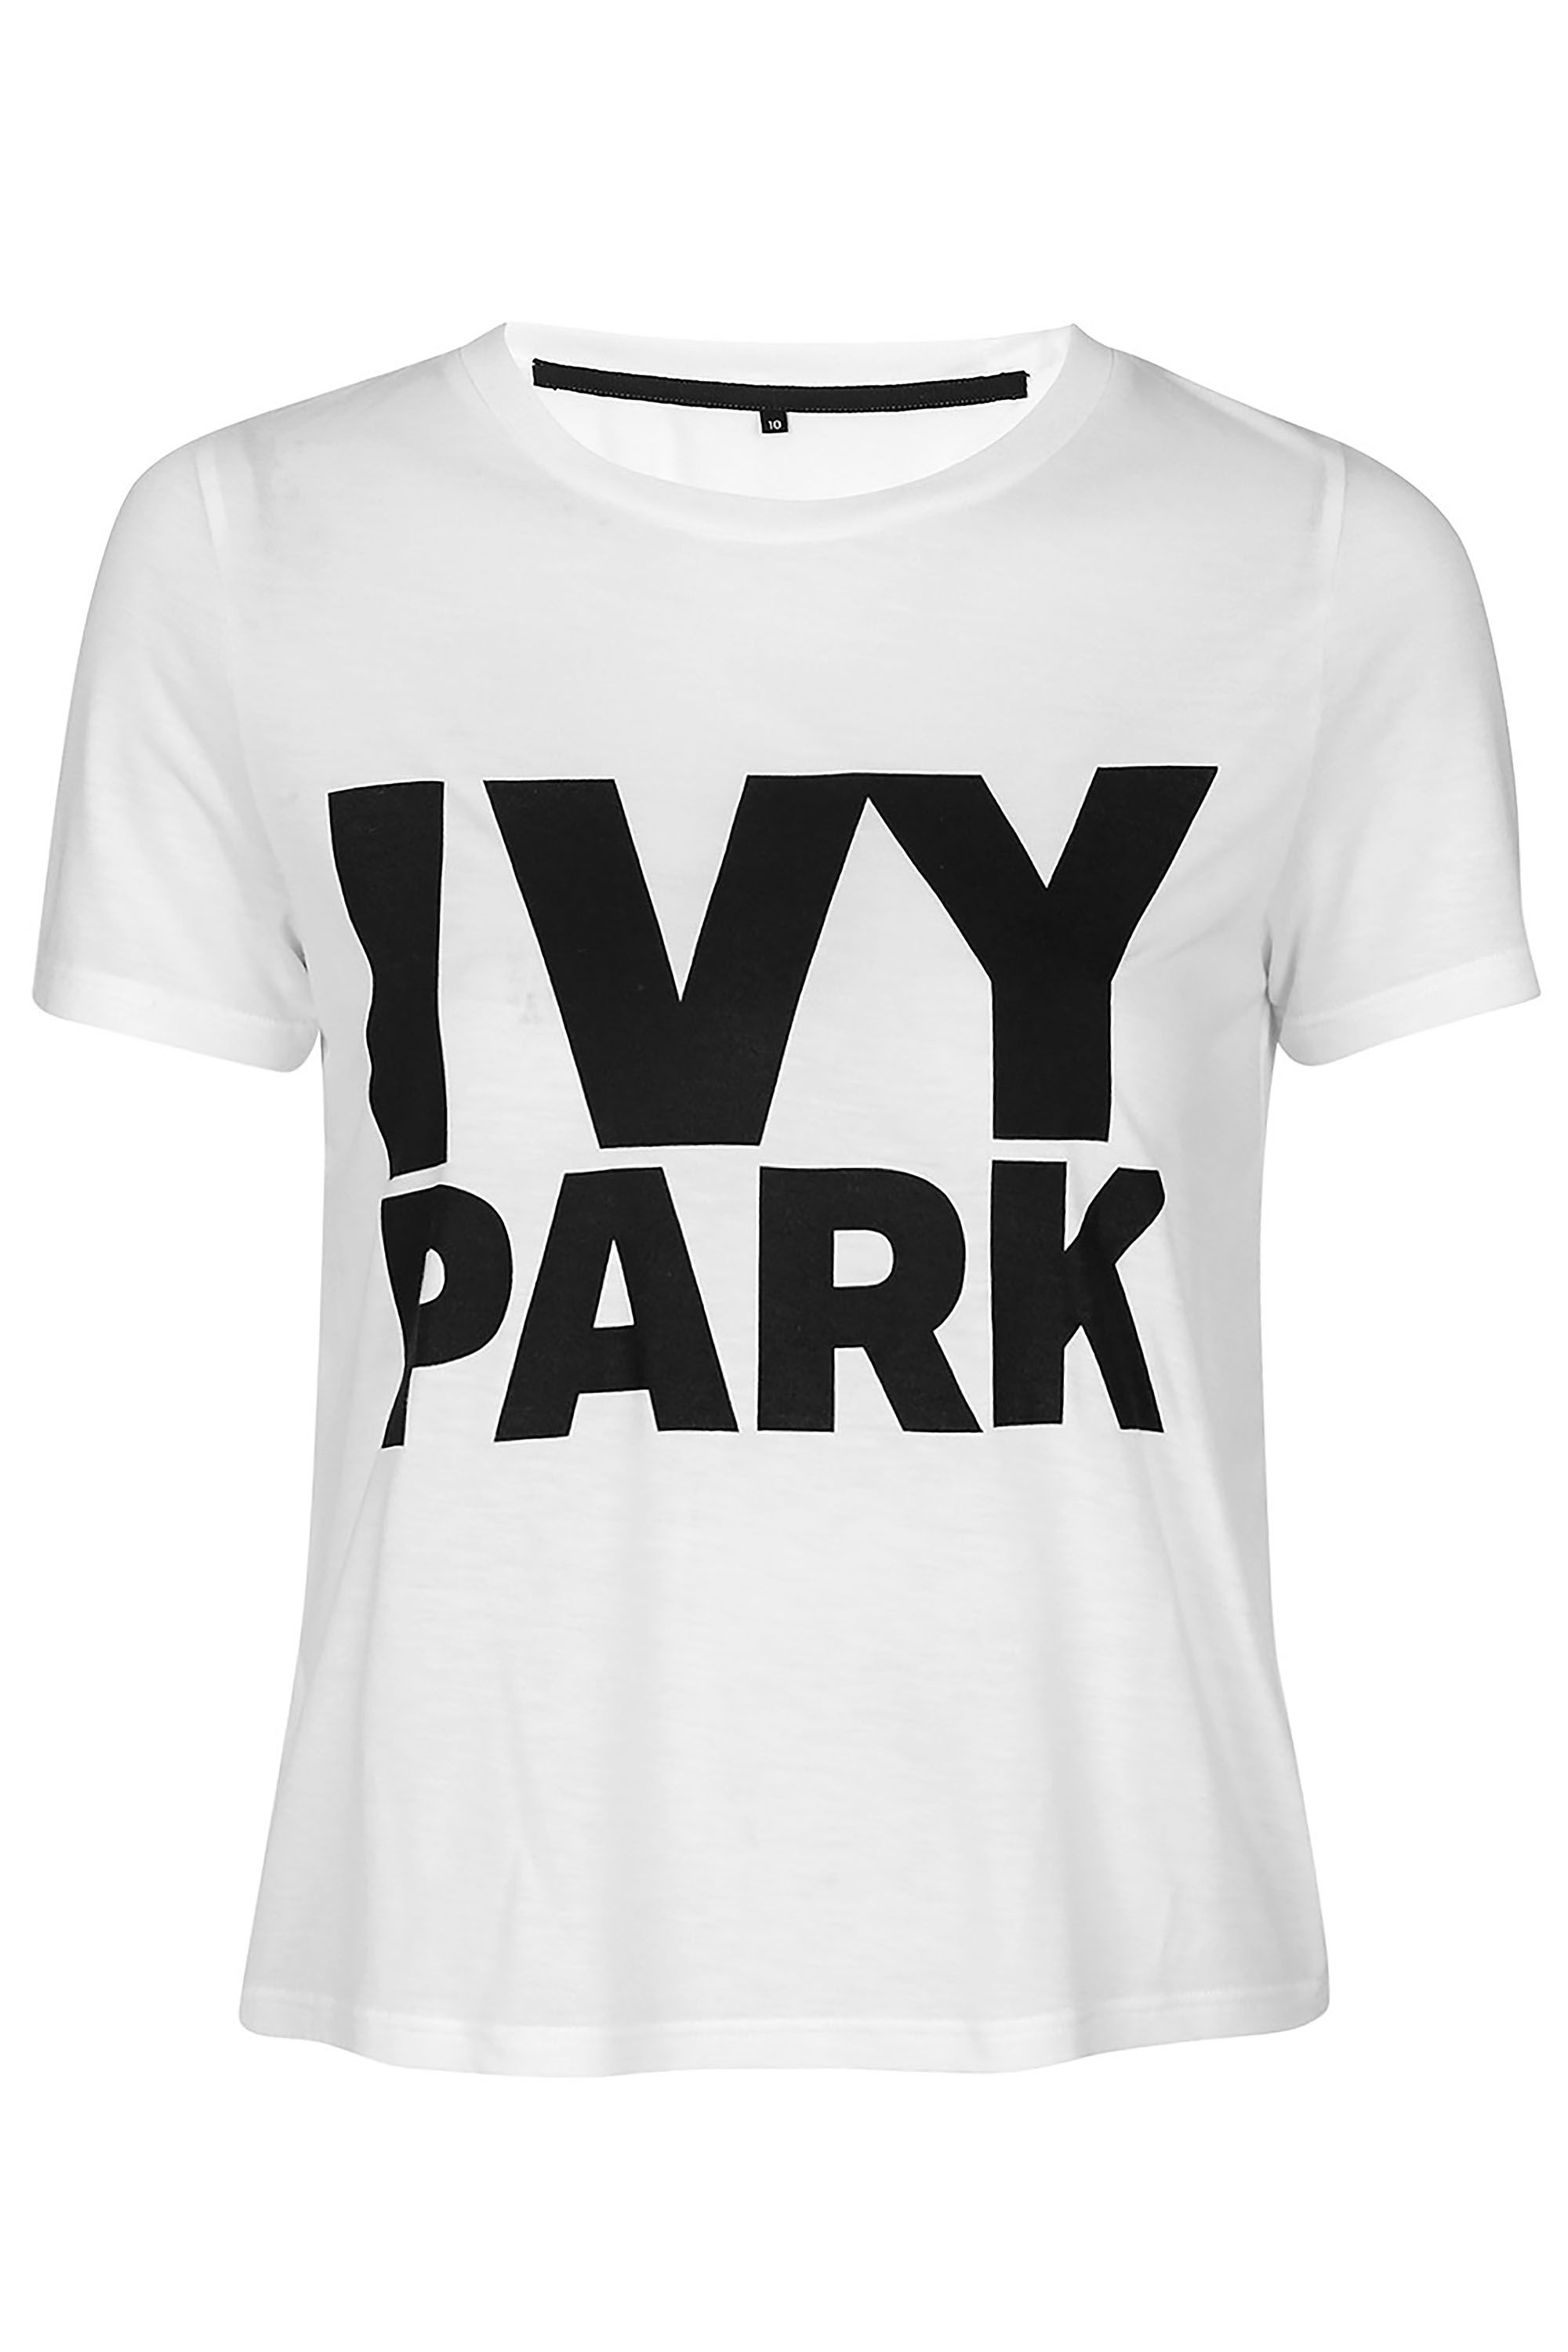 ivy park shirt